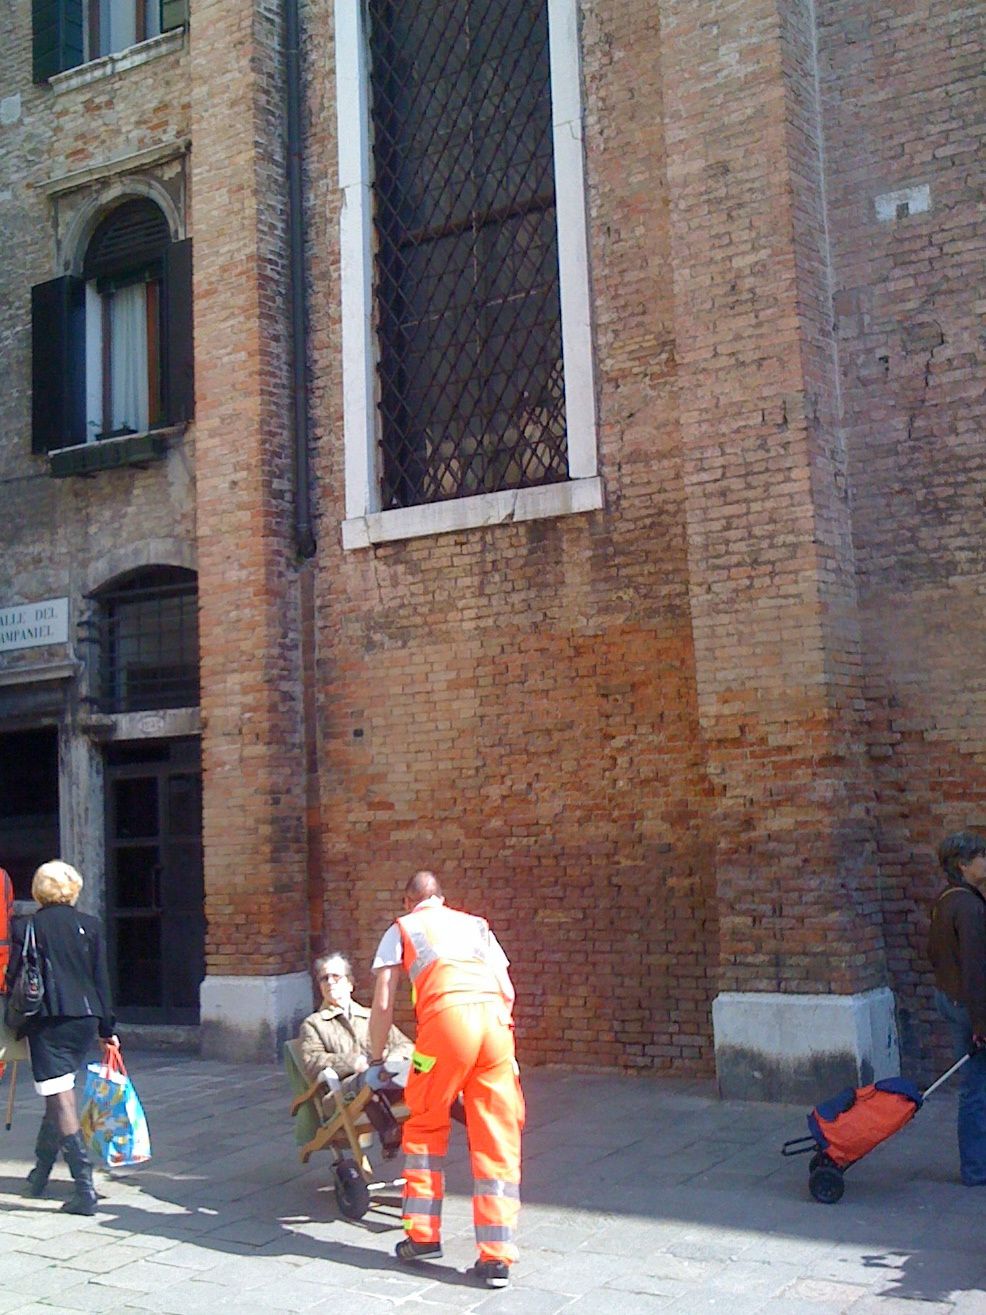 Pour tous ceux qui pensent que Venise est envahie par des hordes de touristes.